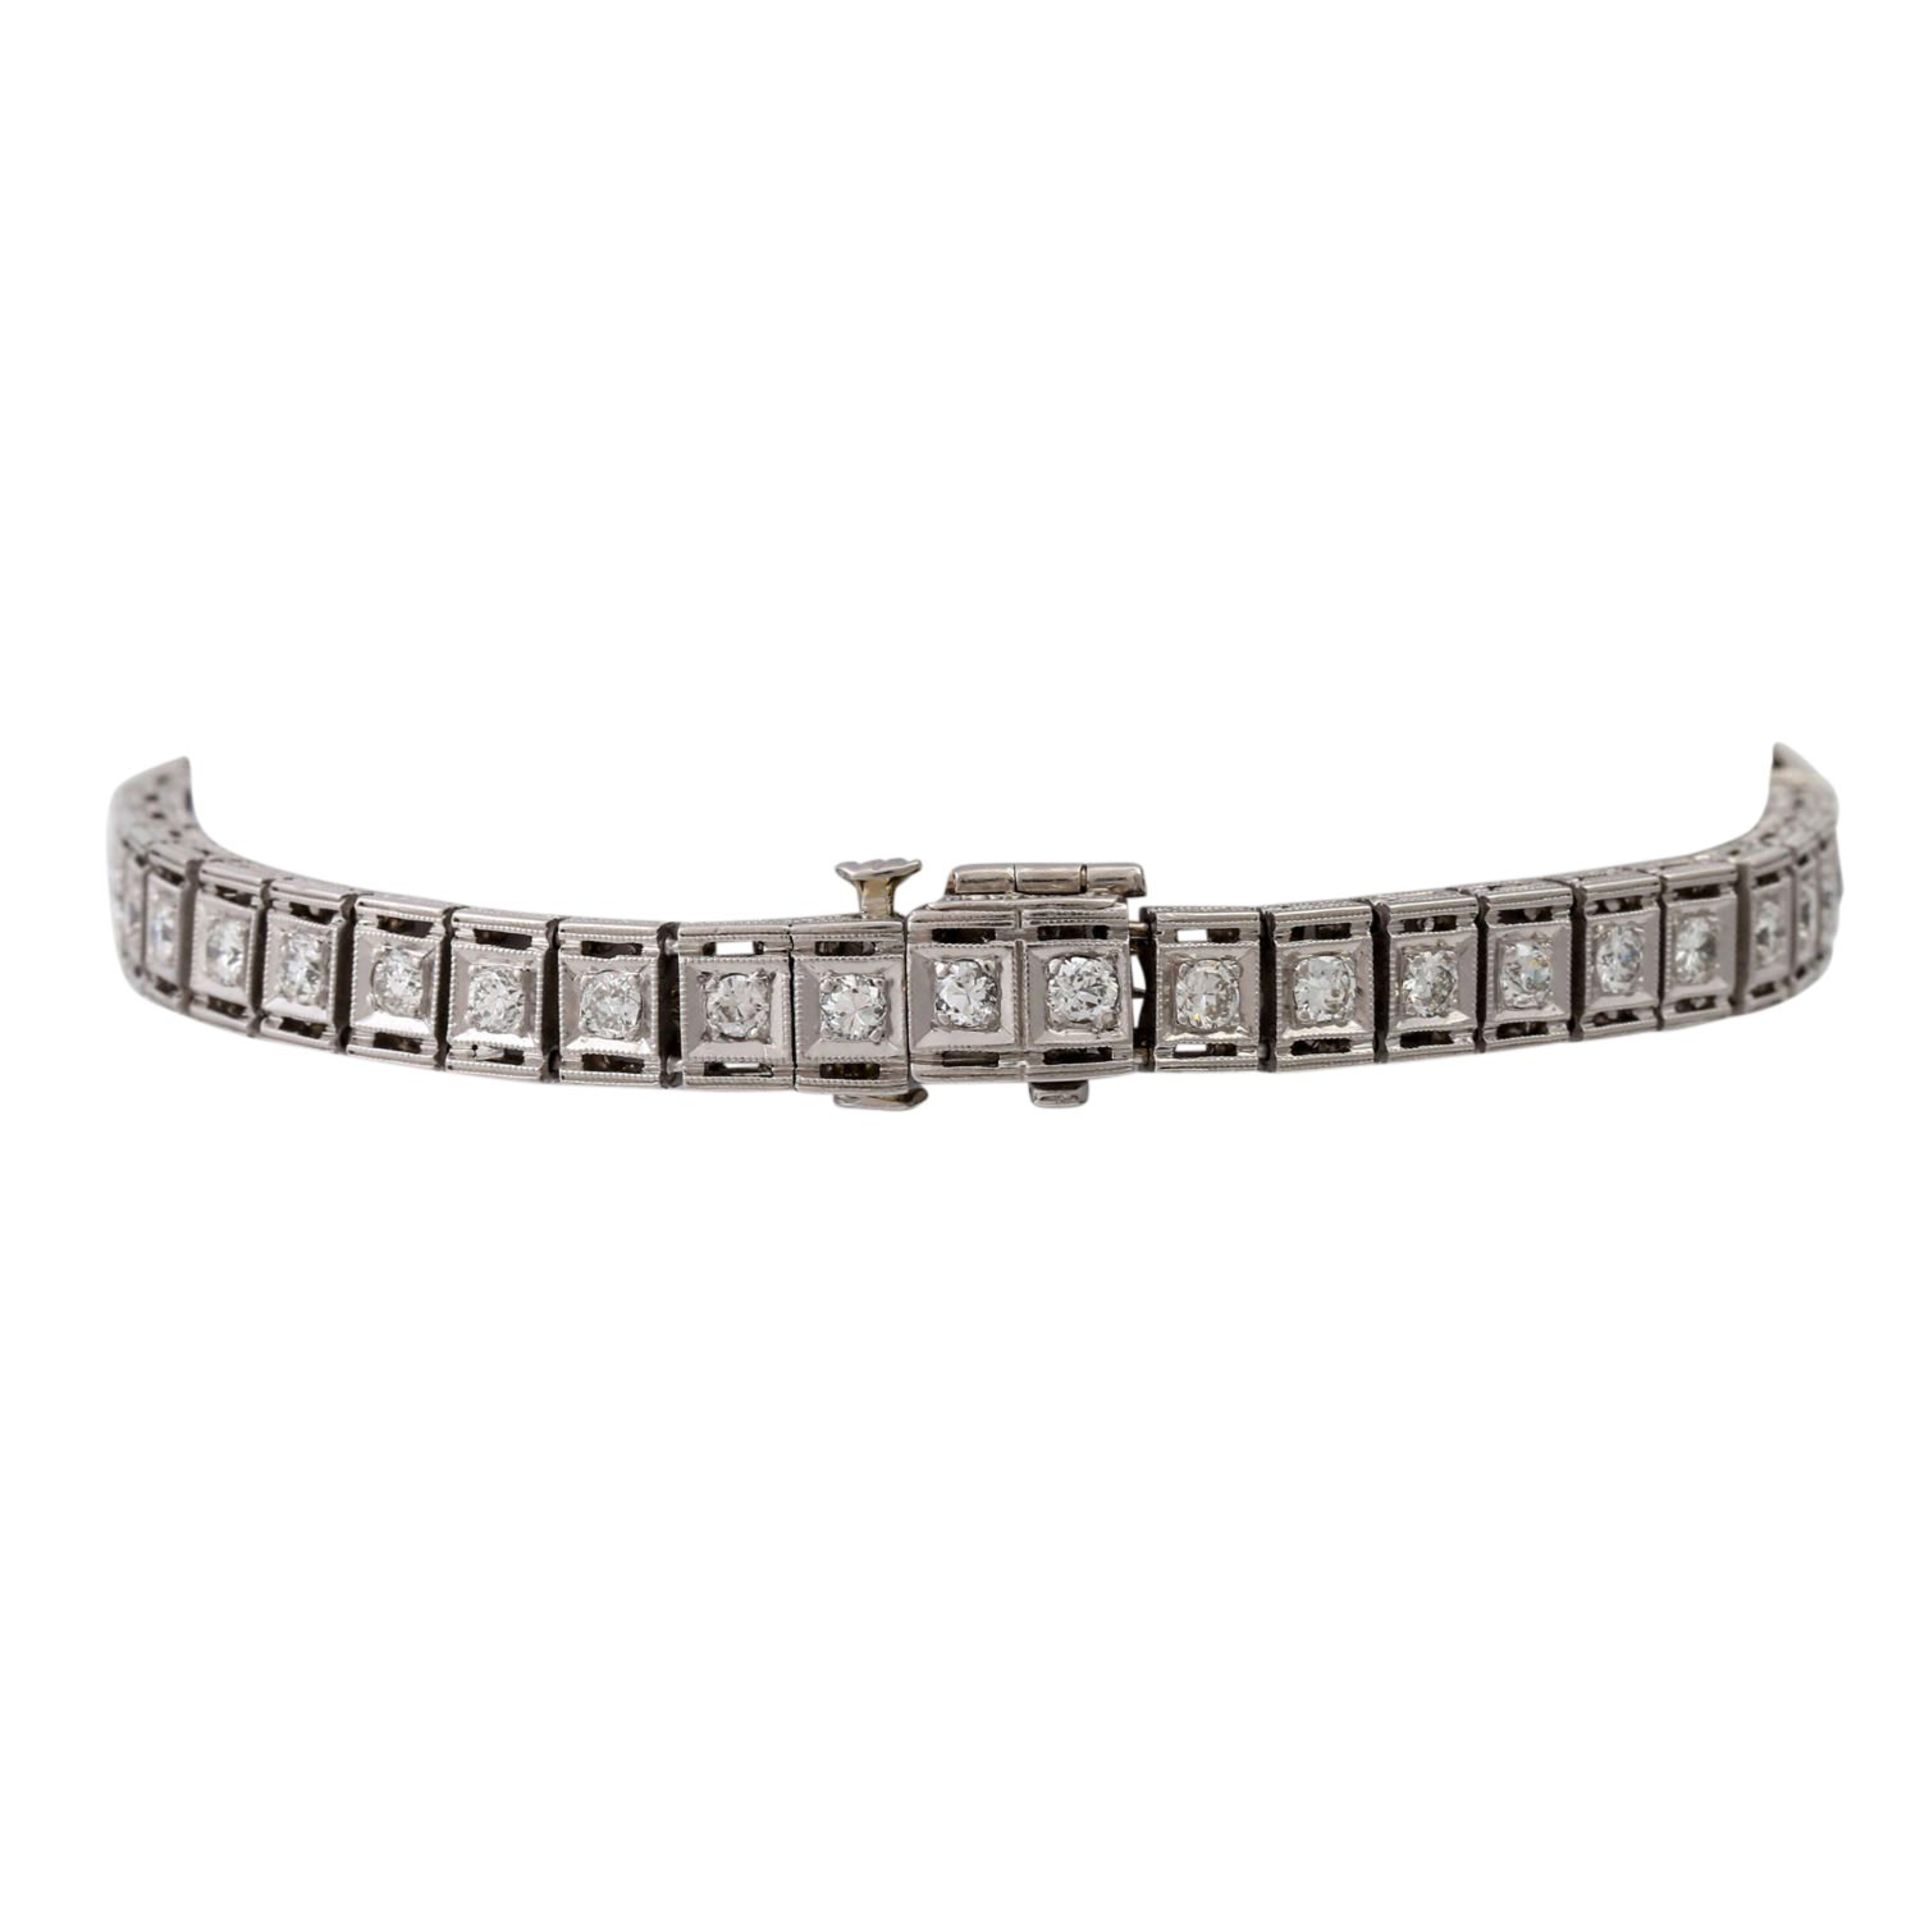 Armband mit Saphiren und Diamanten,zentraler Navette-Diamant ca. 0,35 ct, weitere Diam - Image 2 of 4